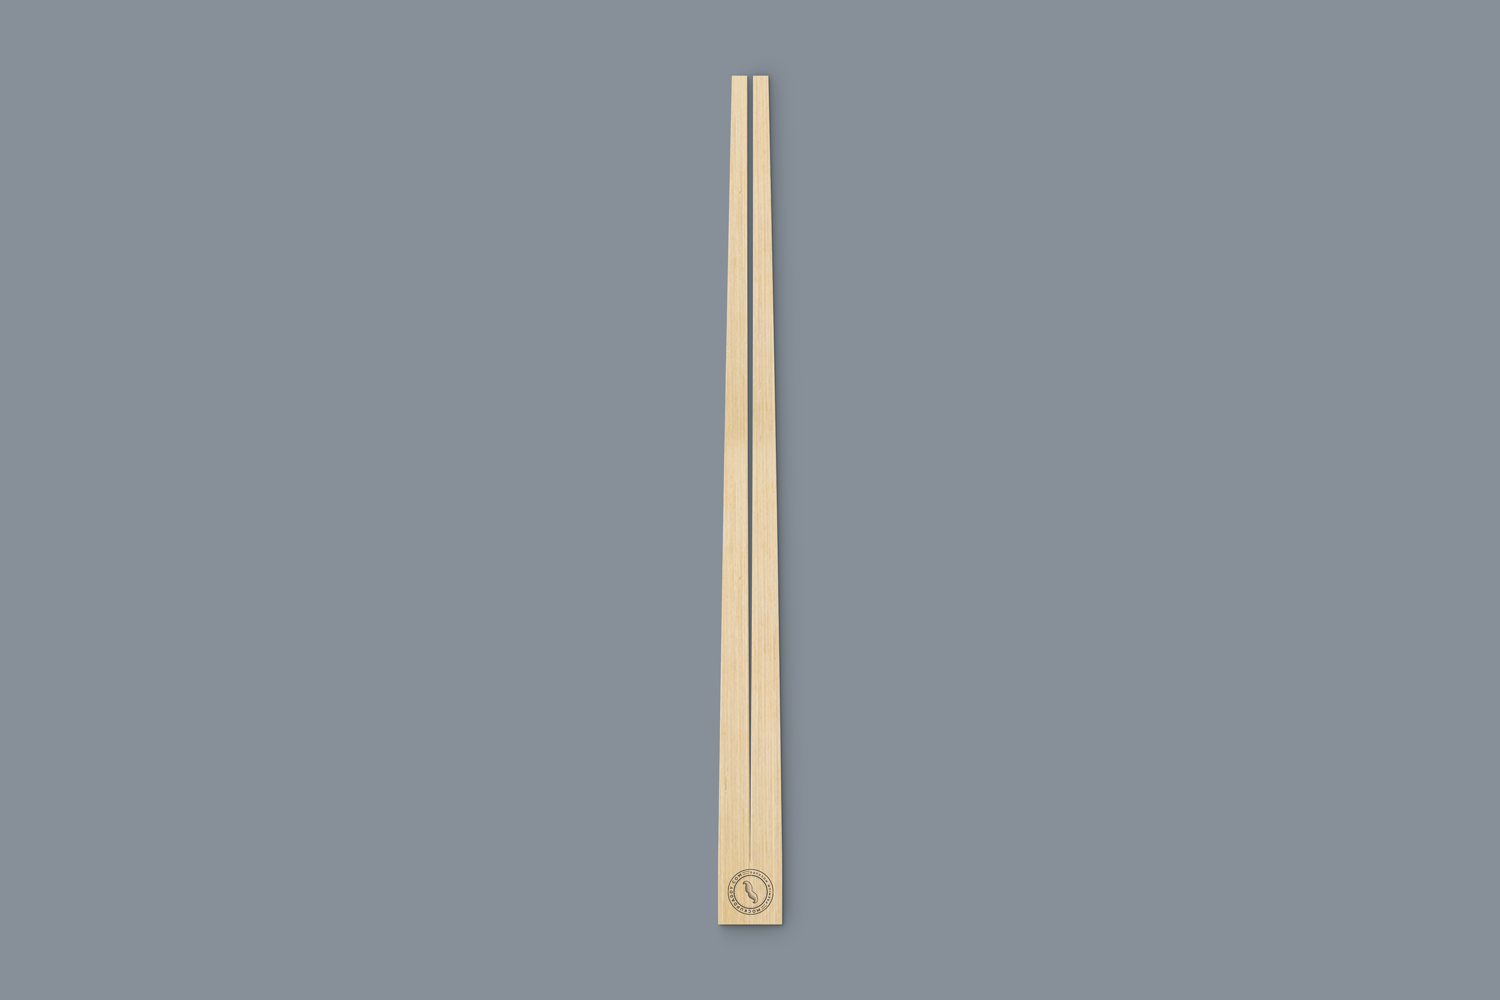 Digital mockup of two wooden chopsticks in open packaging.